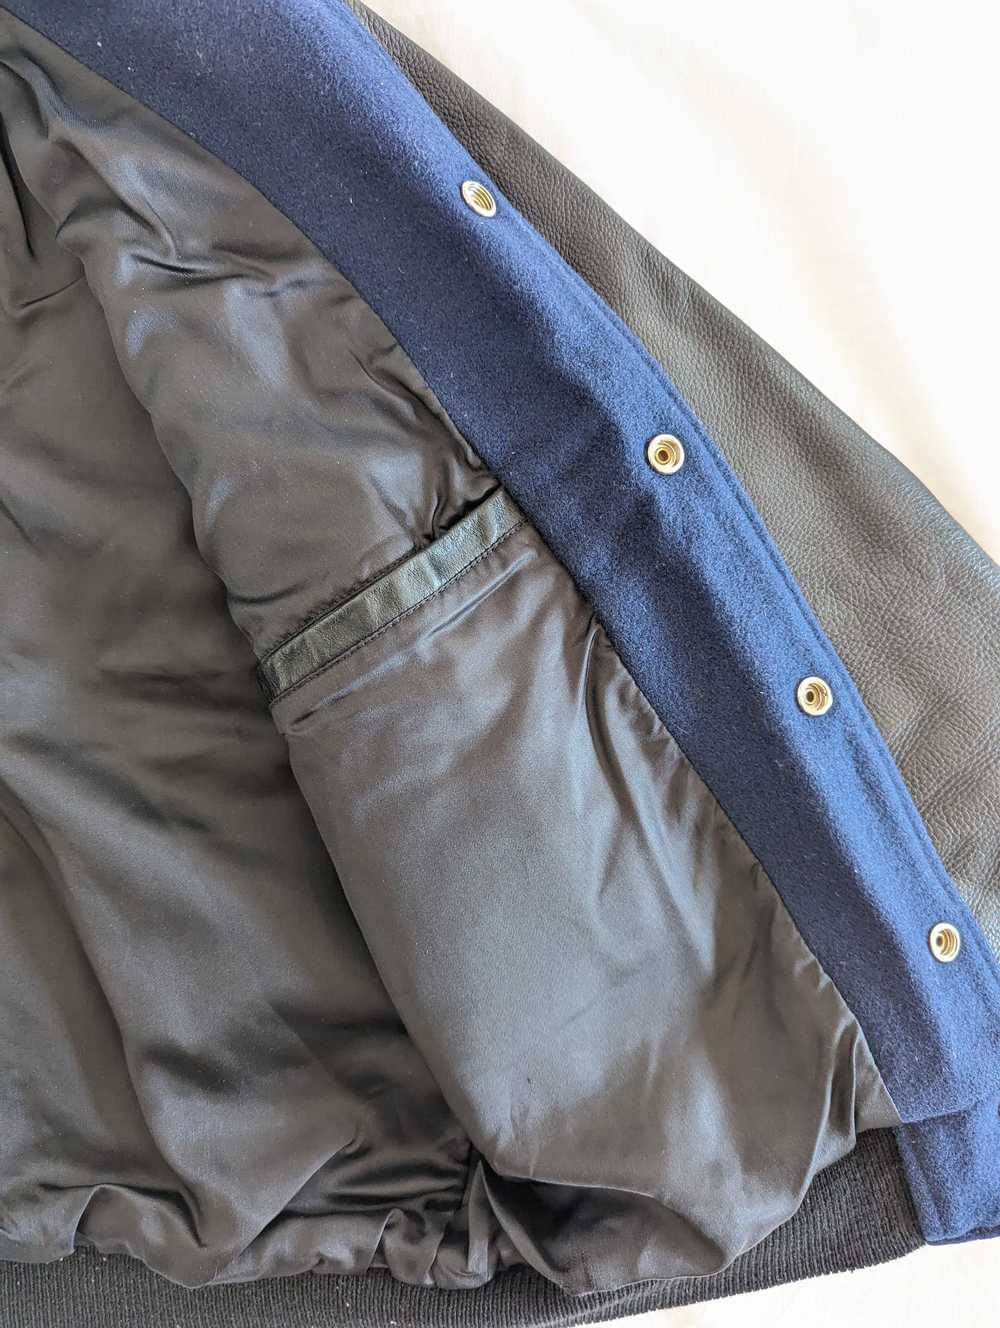 Unis Wool & Leather Varsity Jacket - image 12